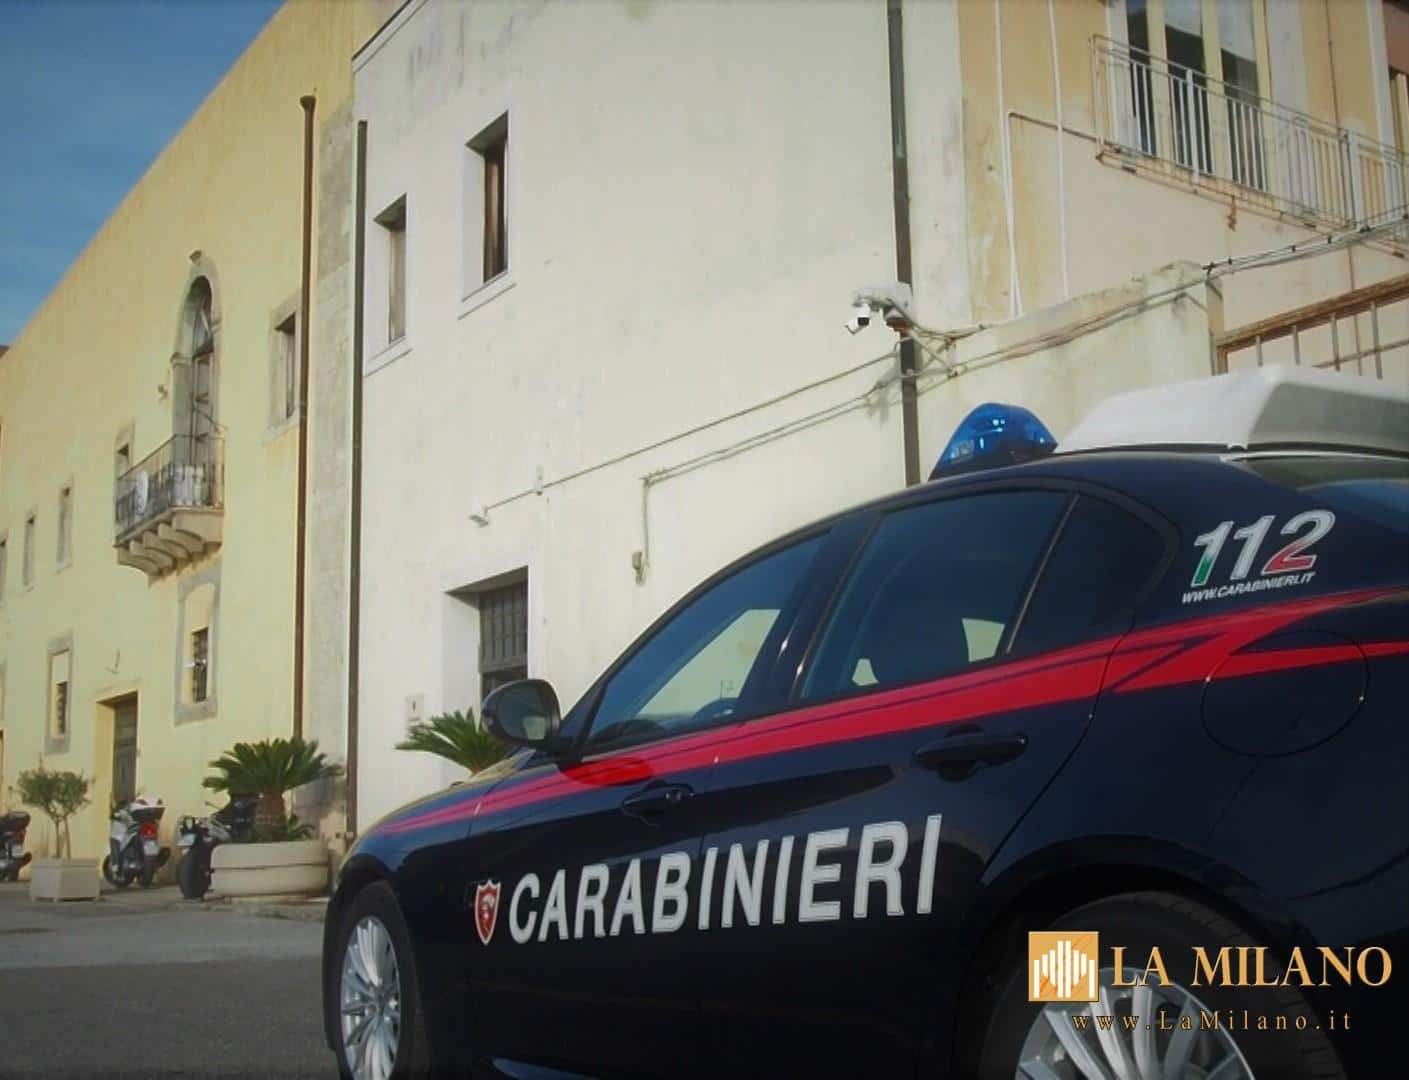 Indagine antidroga coordinata dalla dda della procura della repubblica di Messina. 12 misure cautelari eseguite dai Carabinieri di Milazzo (ME).